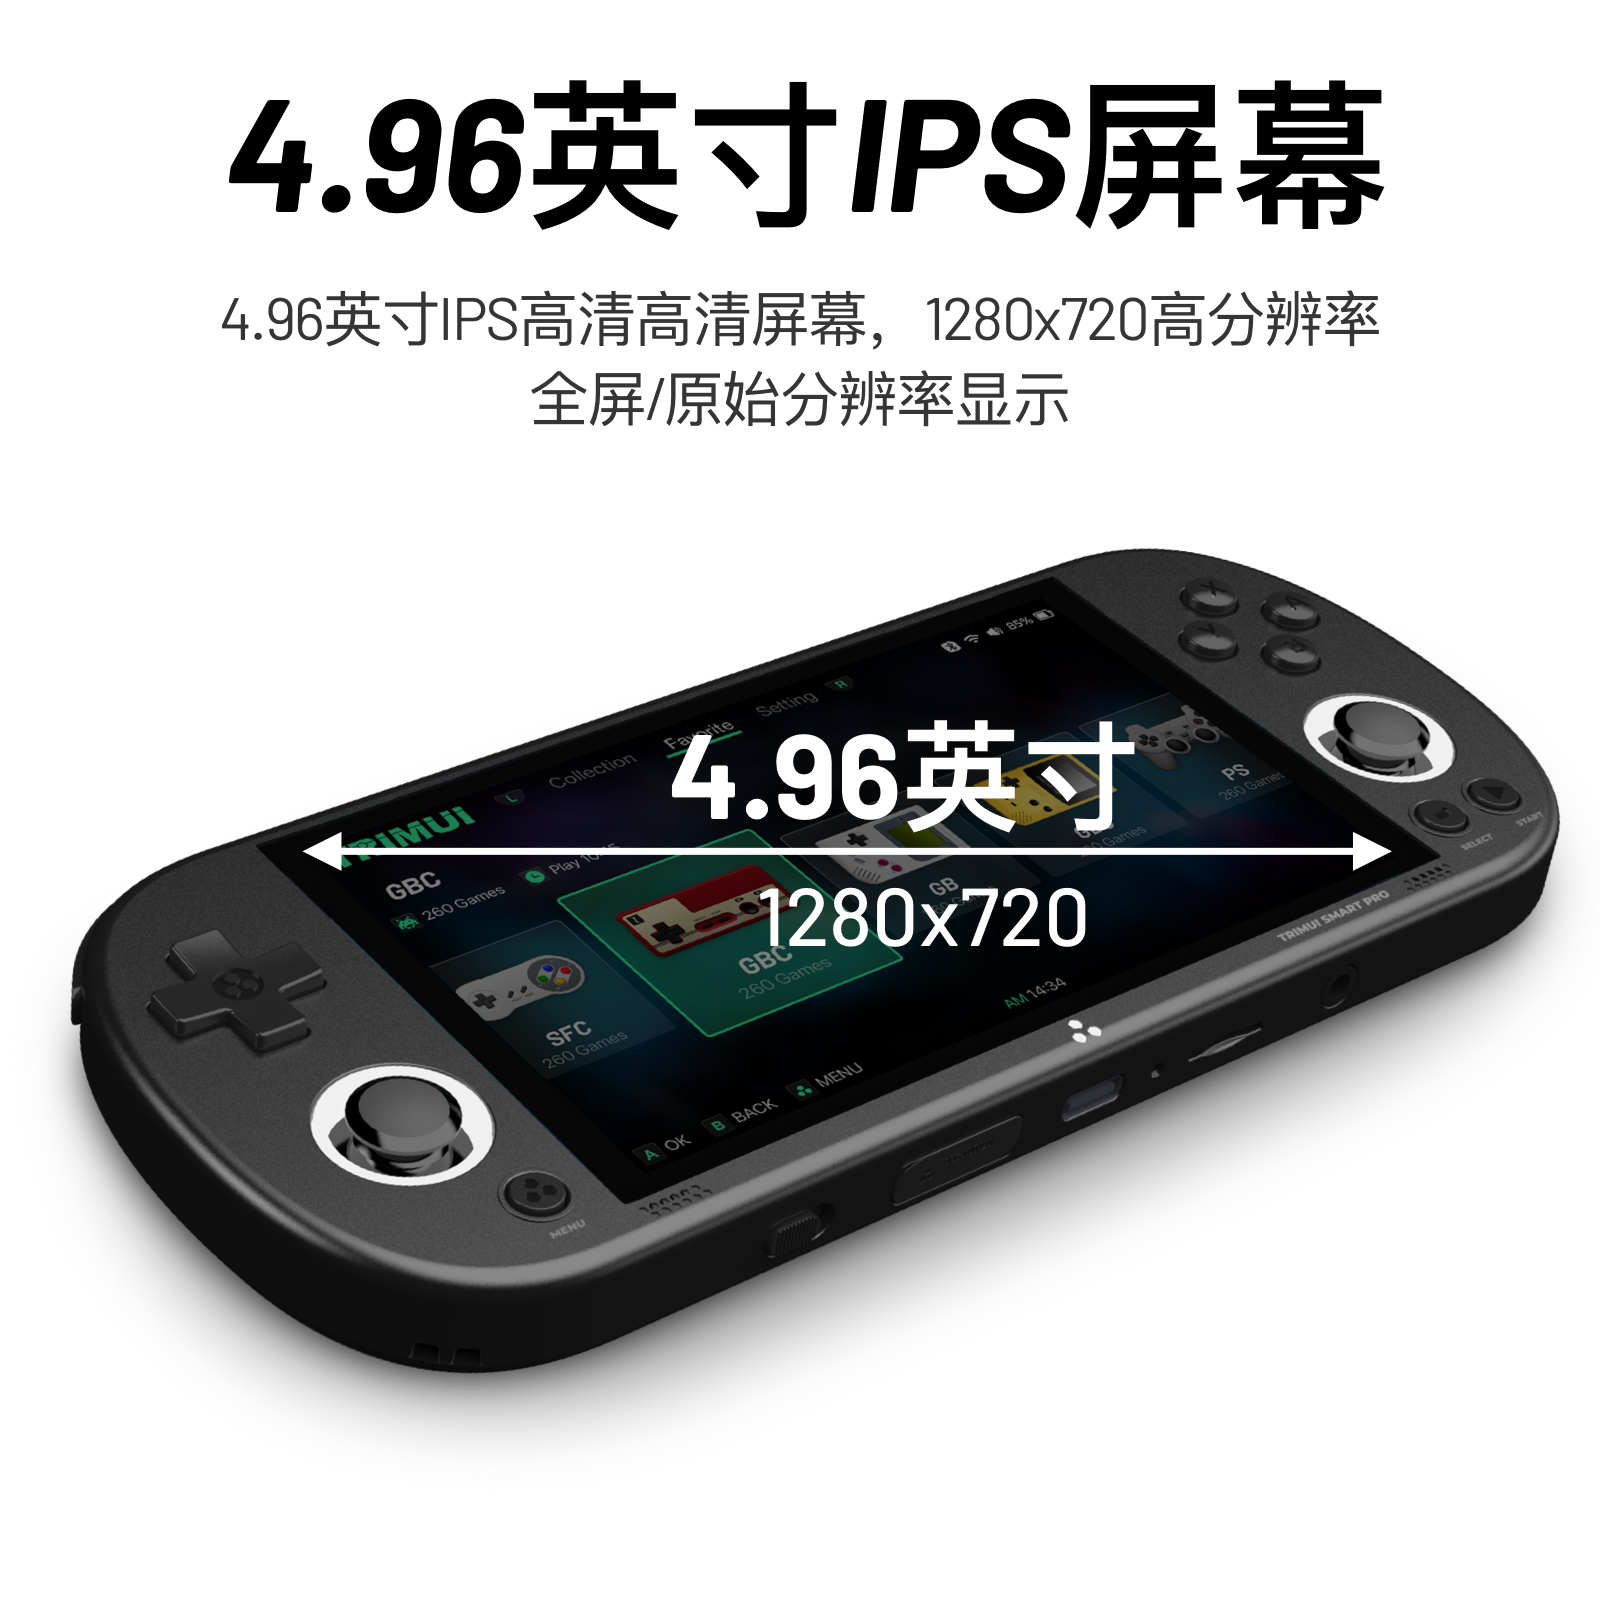 【1.0.4固件】TRIMUI SMART PRO复古游戏机掌机 童年怀旧PSP掌上游戏机模拟GBA掌机吹米TSP掌机支持蓝牙串流 399元